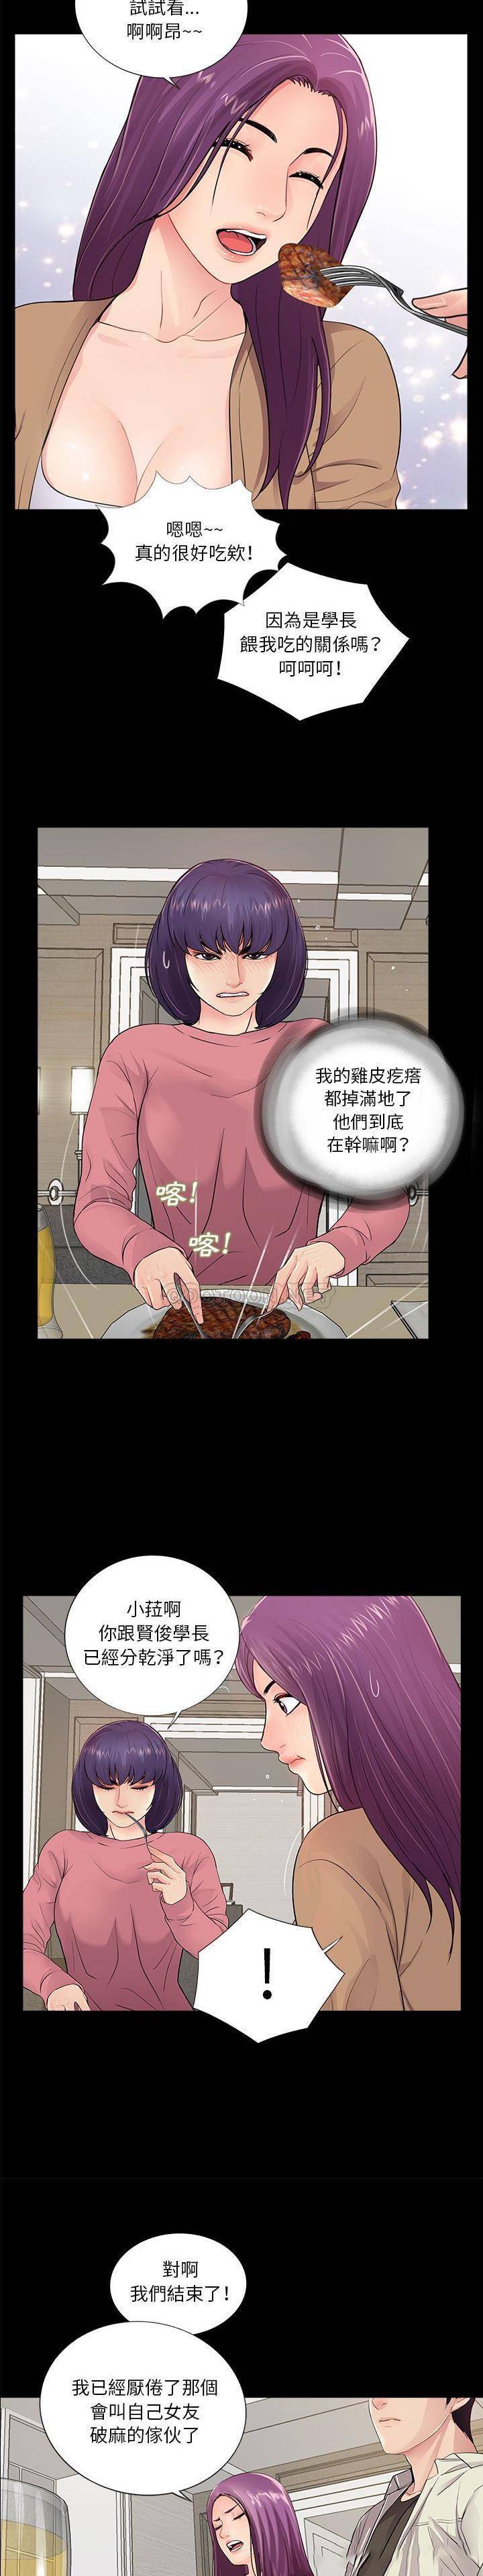 韩国污漫画 神秘復學生 第13话 11